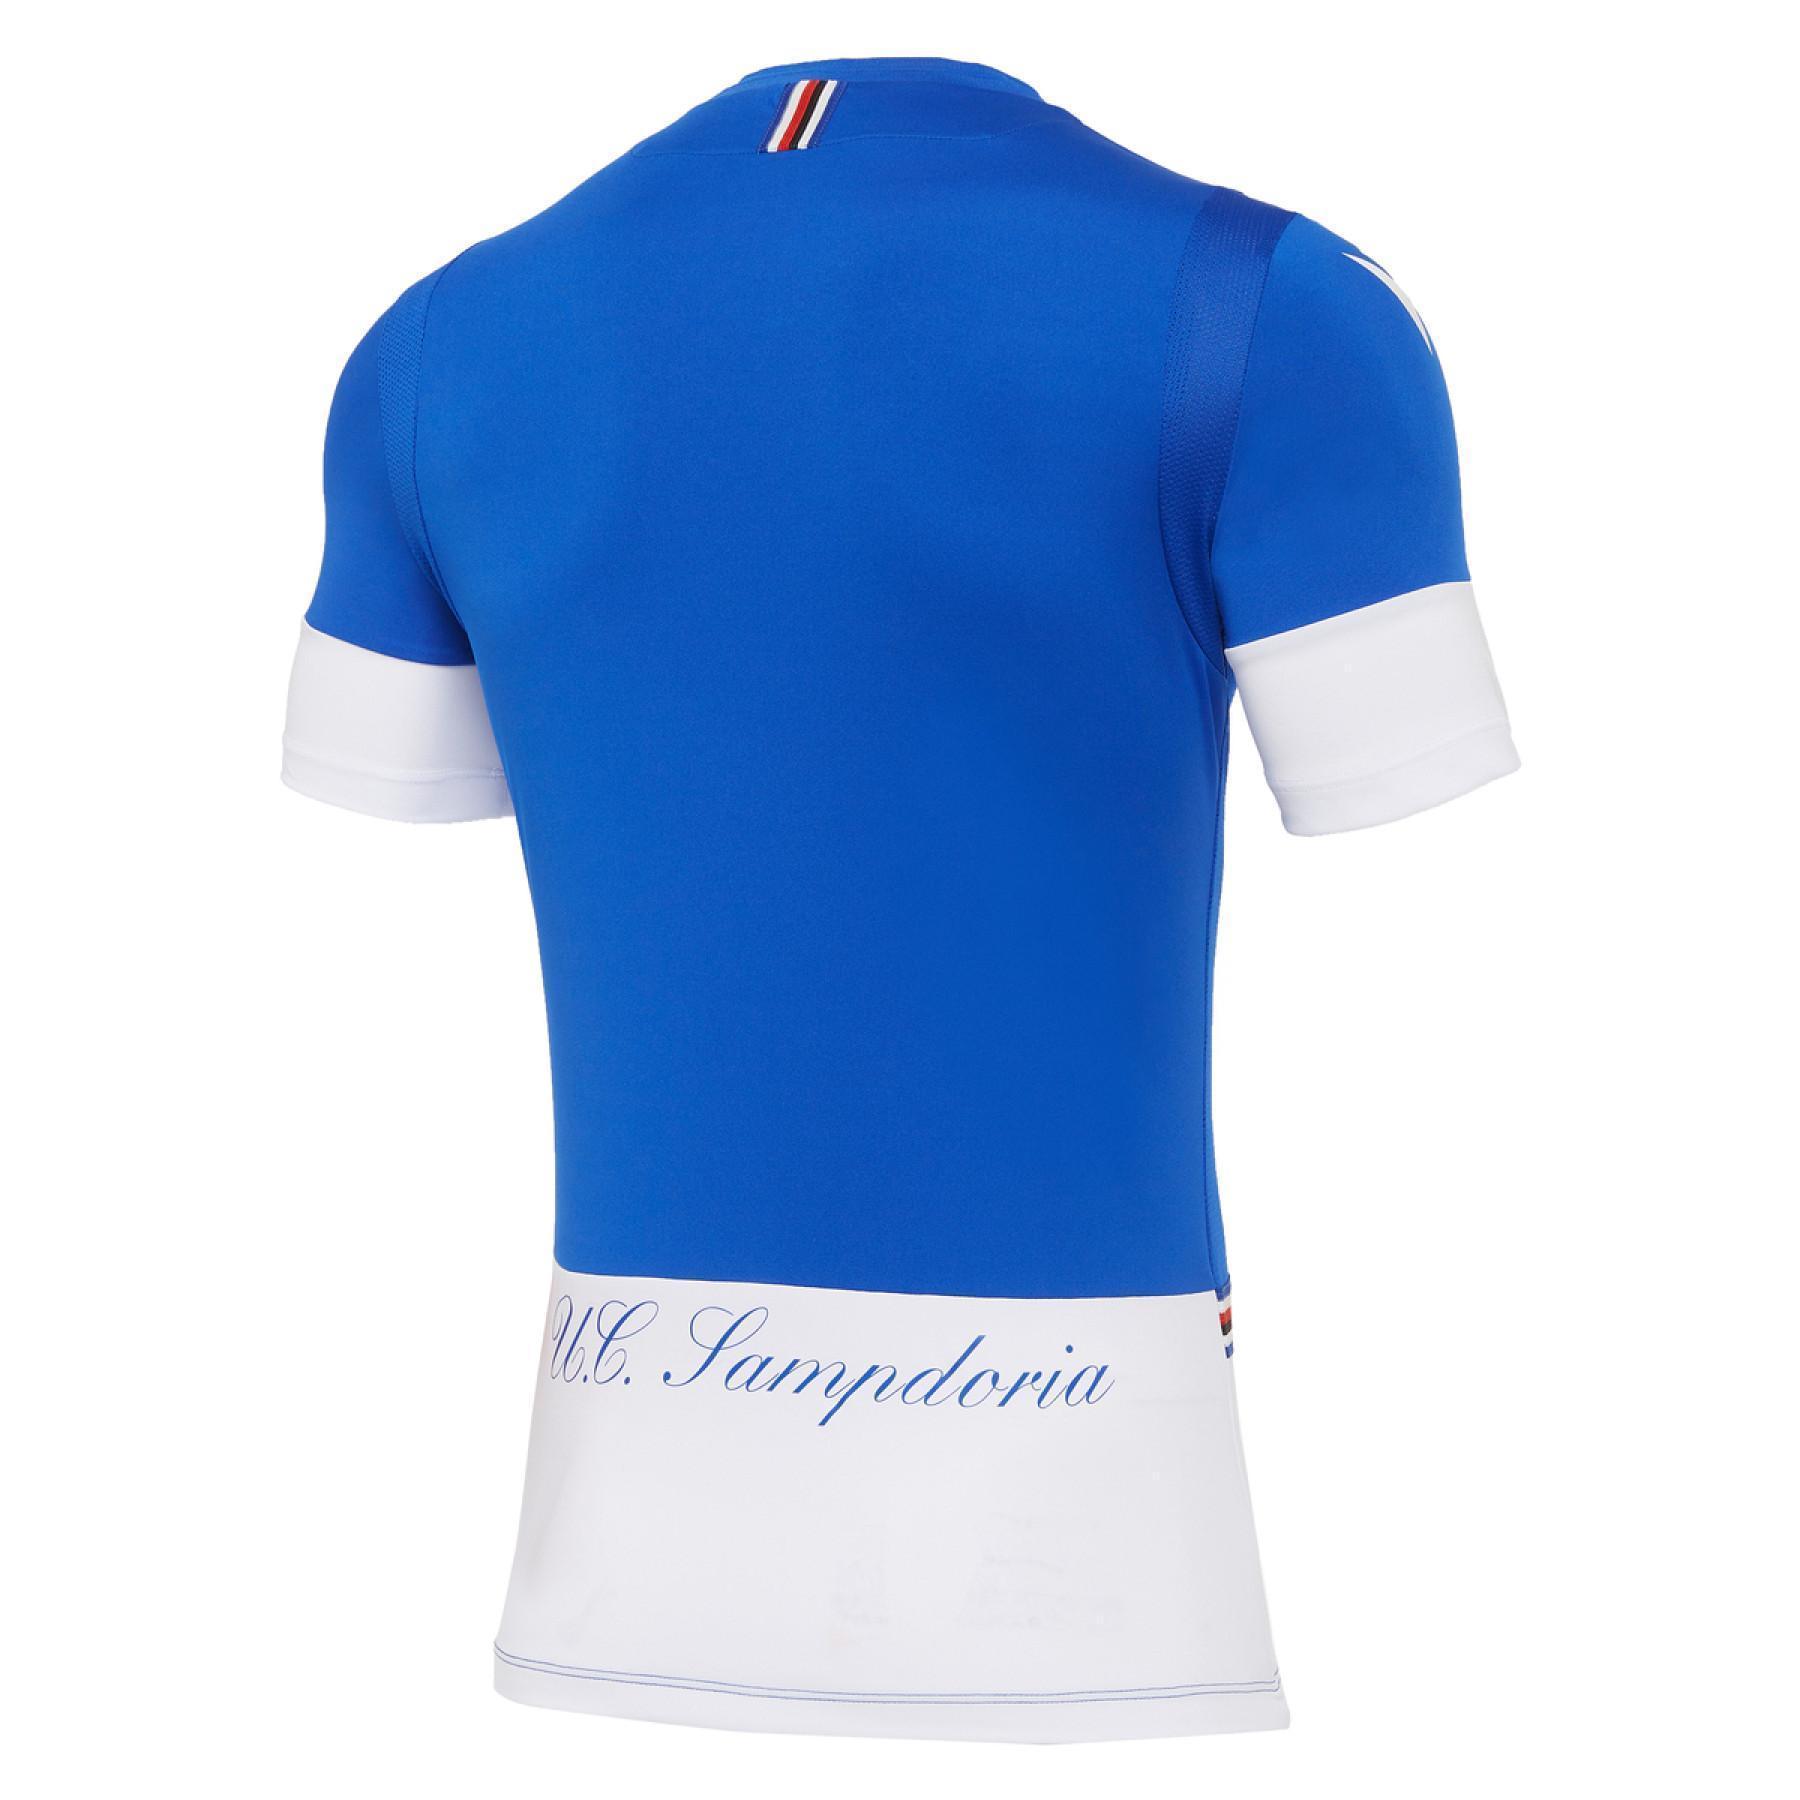 camiseta del uc sampdoria 2020/21